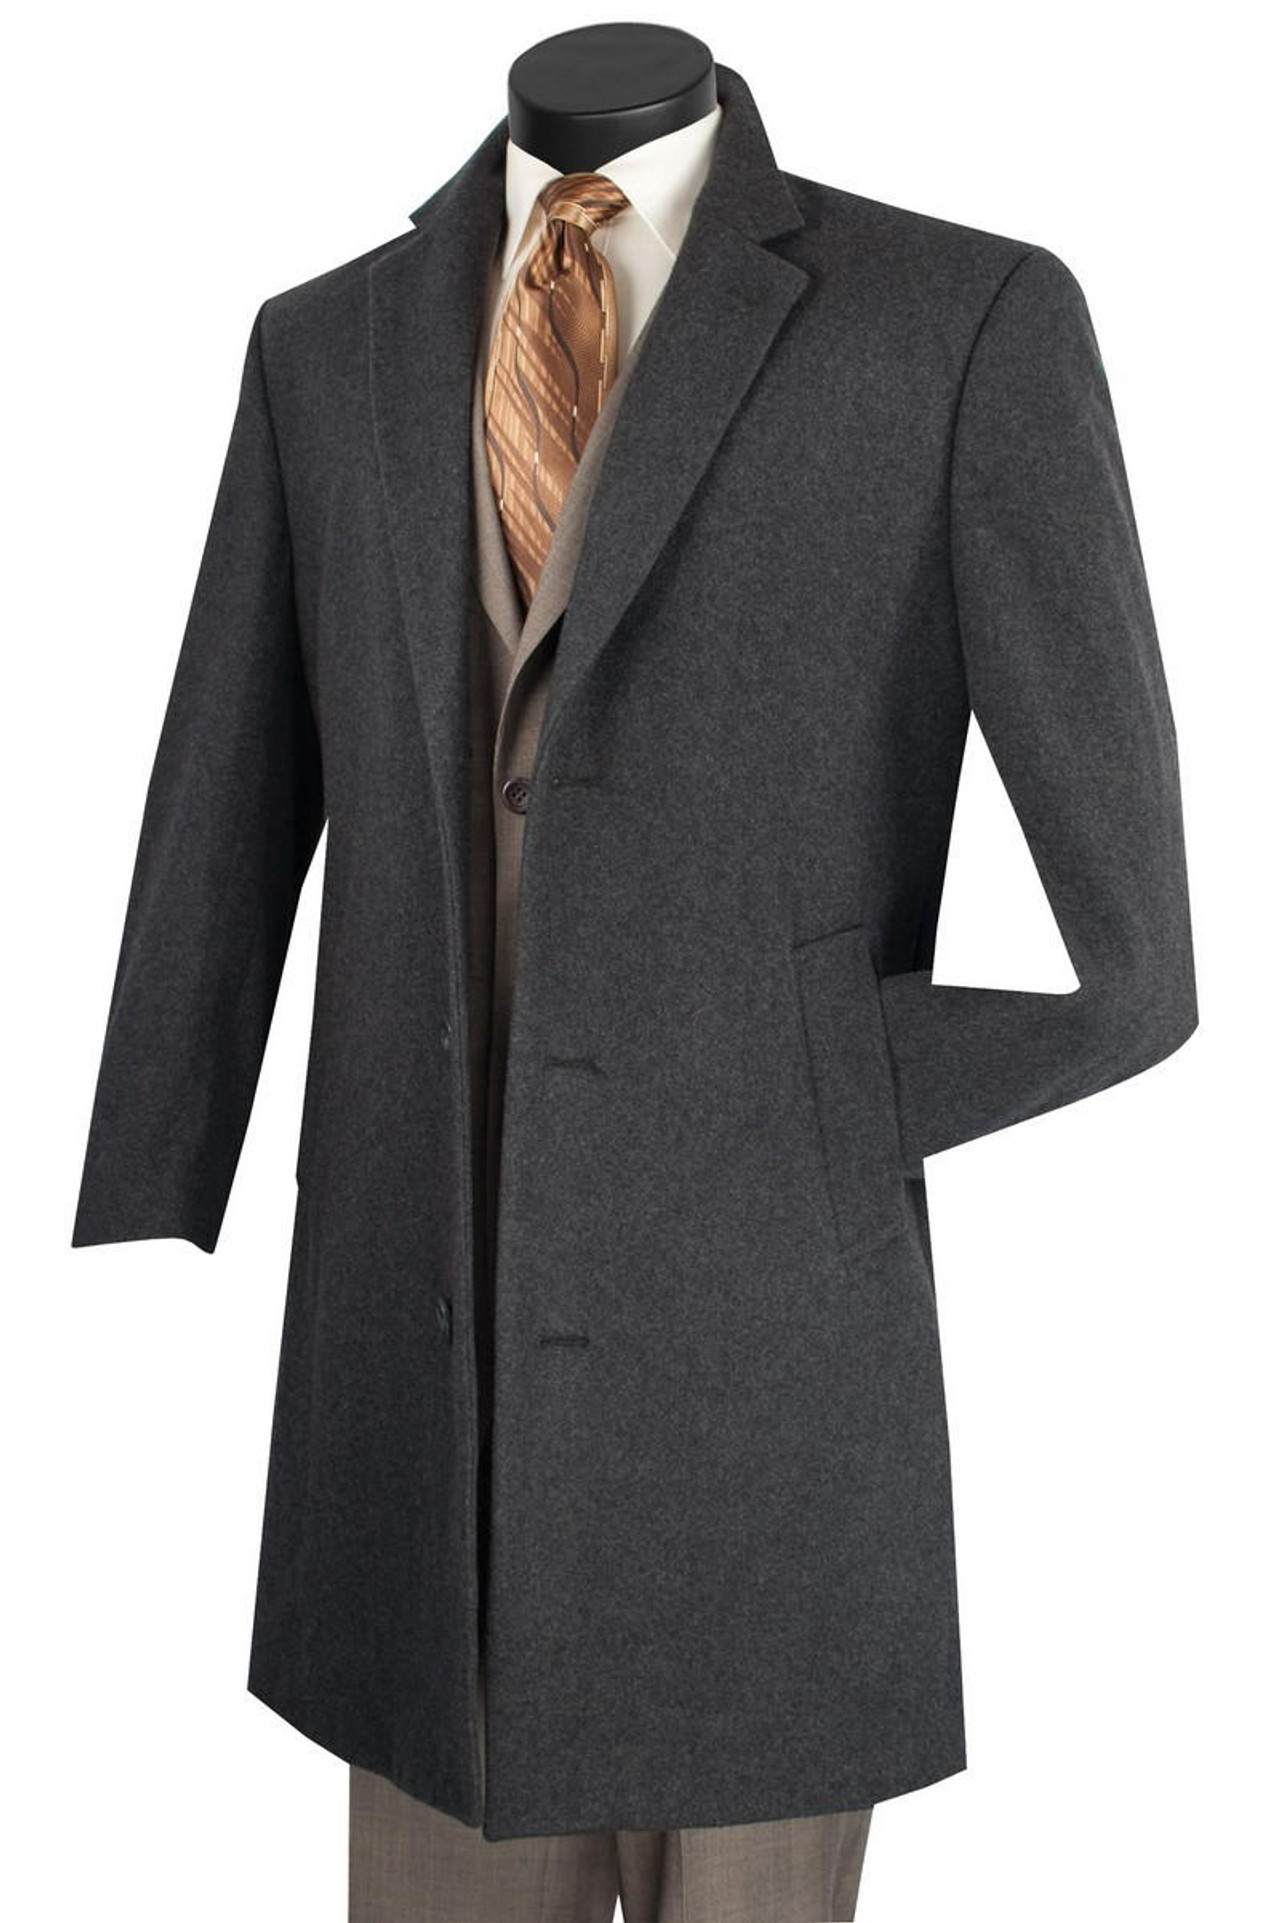 Coats | Men's Clothing | ContempoSuits.com